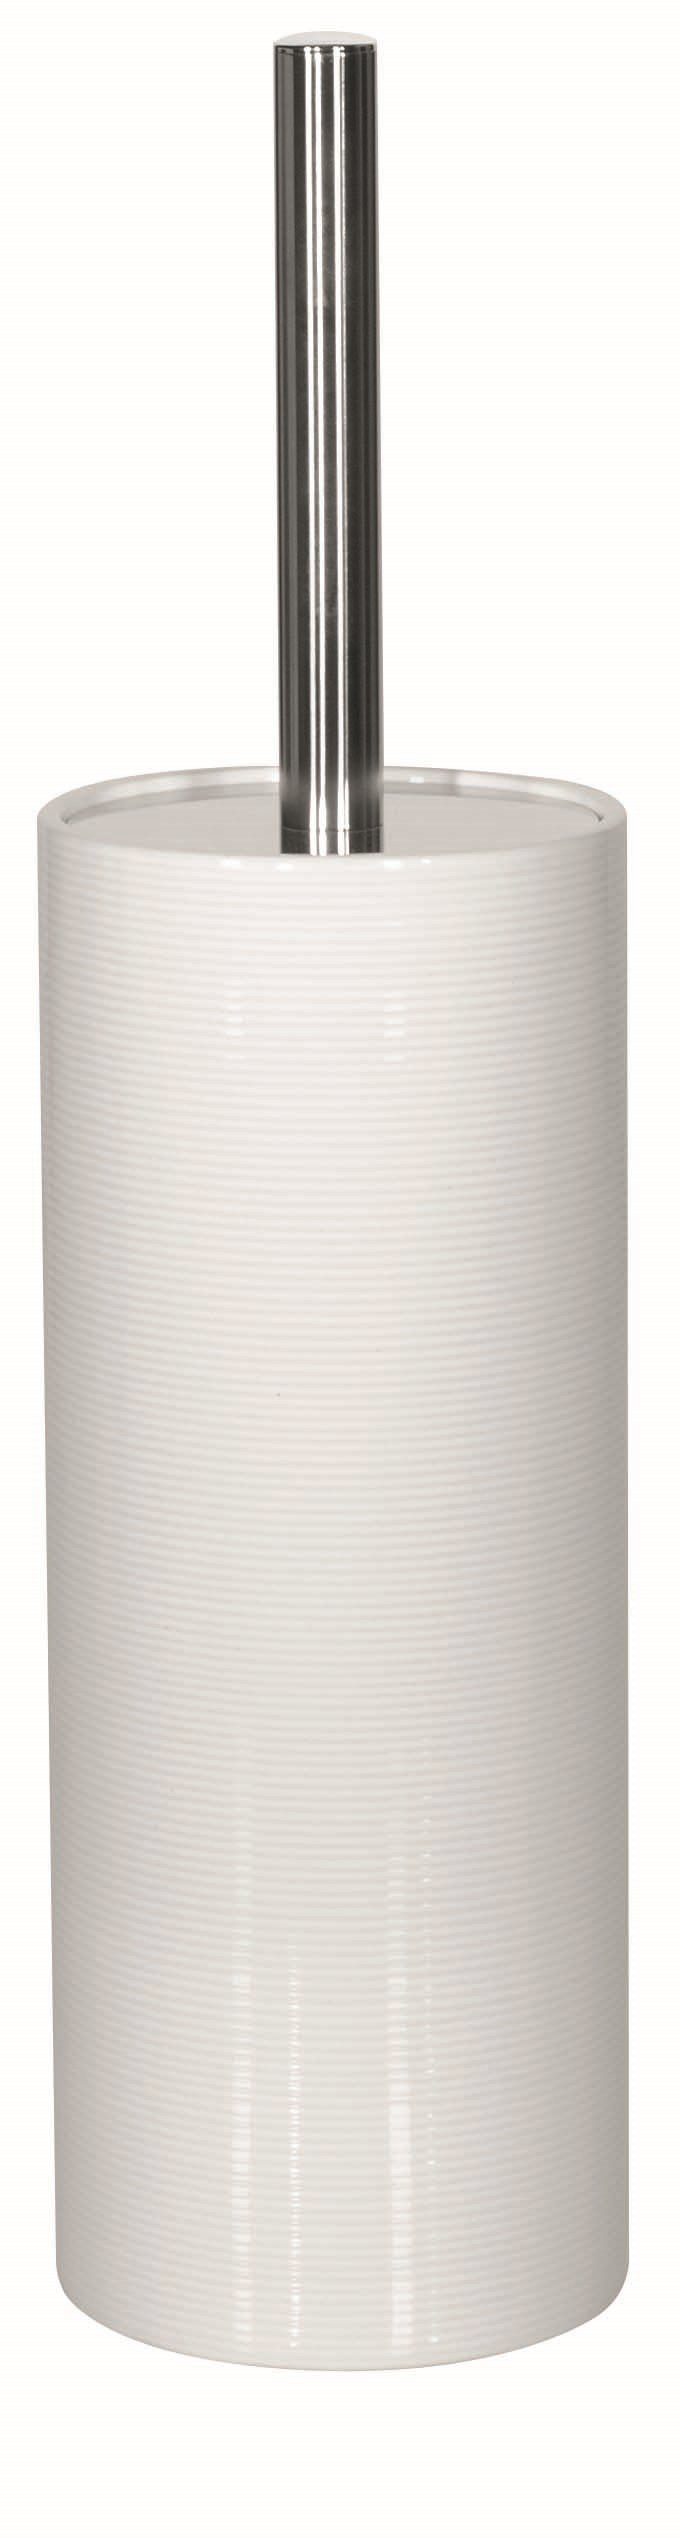 spirella Toilettenpapierhalter WC-Bürste TUBE RIBBED, Toilettenbürste aus hochwertiger Keramik, mit Deckel, mit Rillenstruktur in 3D-Effekt, weiß